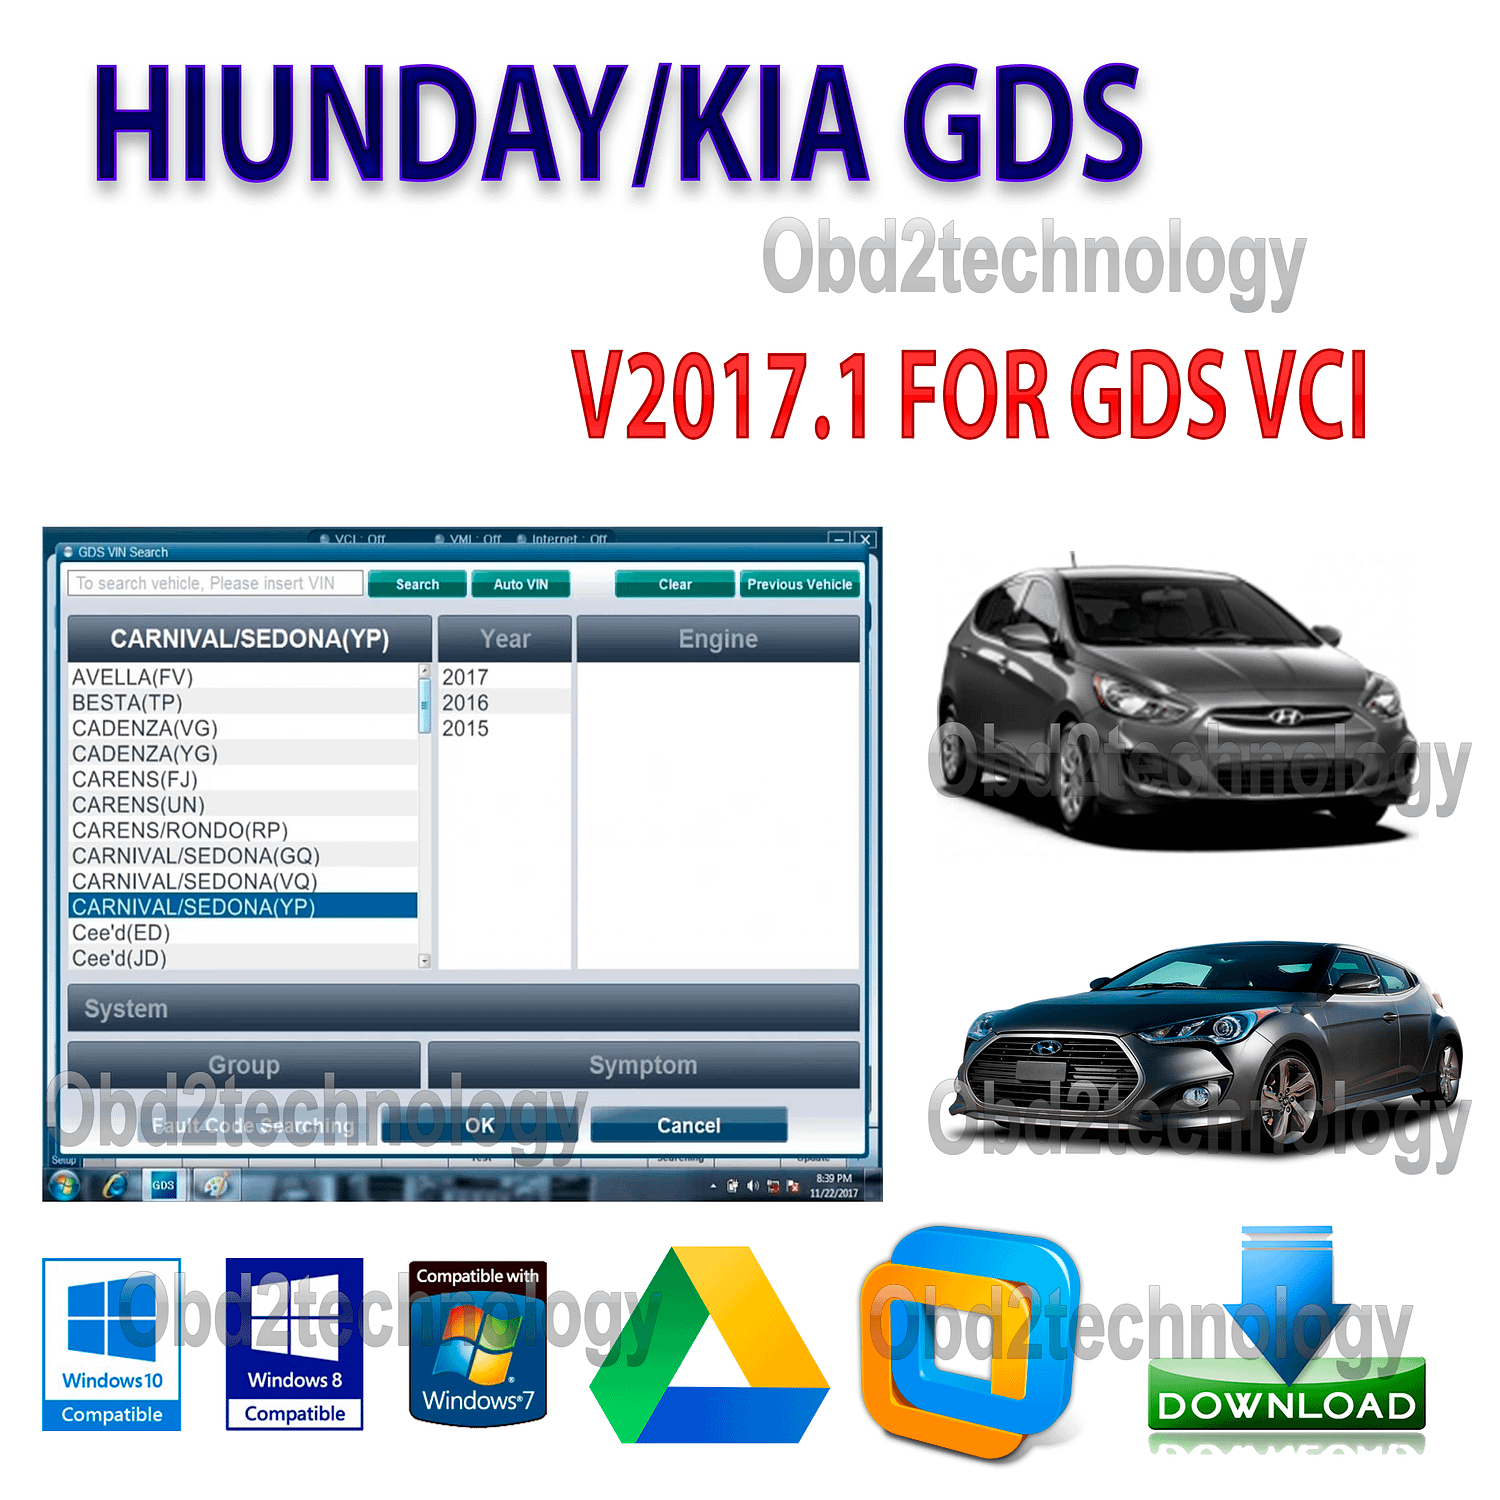 mise mise mise à jour du logiciel hyundai & kia gds 2017 en anglais régions usa/europe installation native téléchargement immédiat